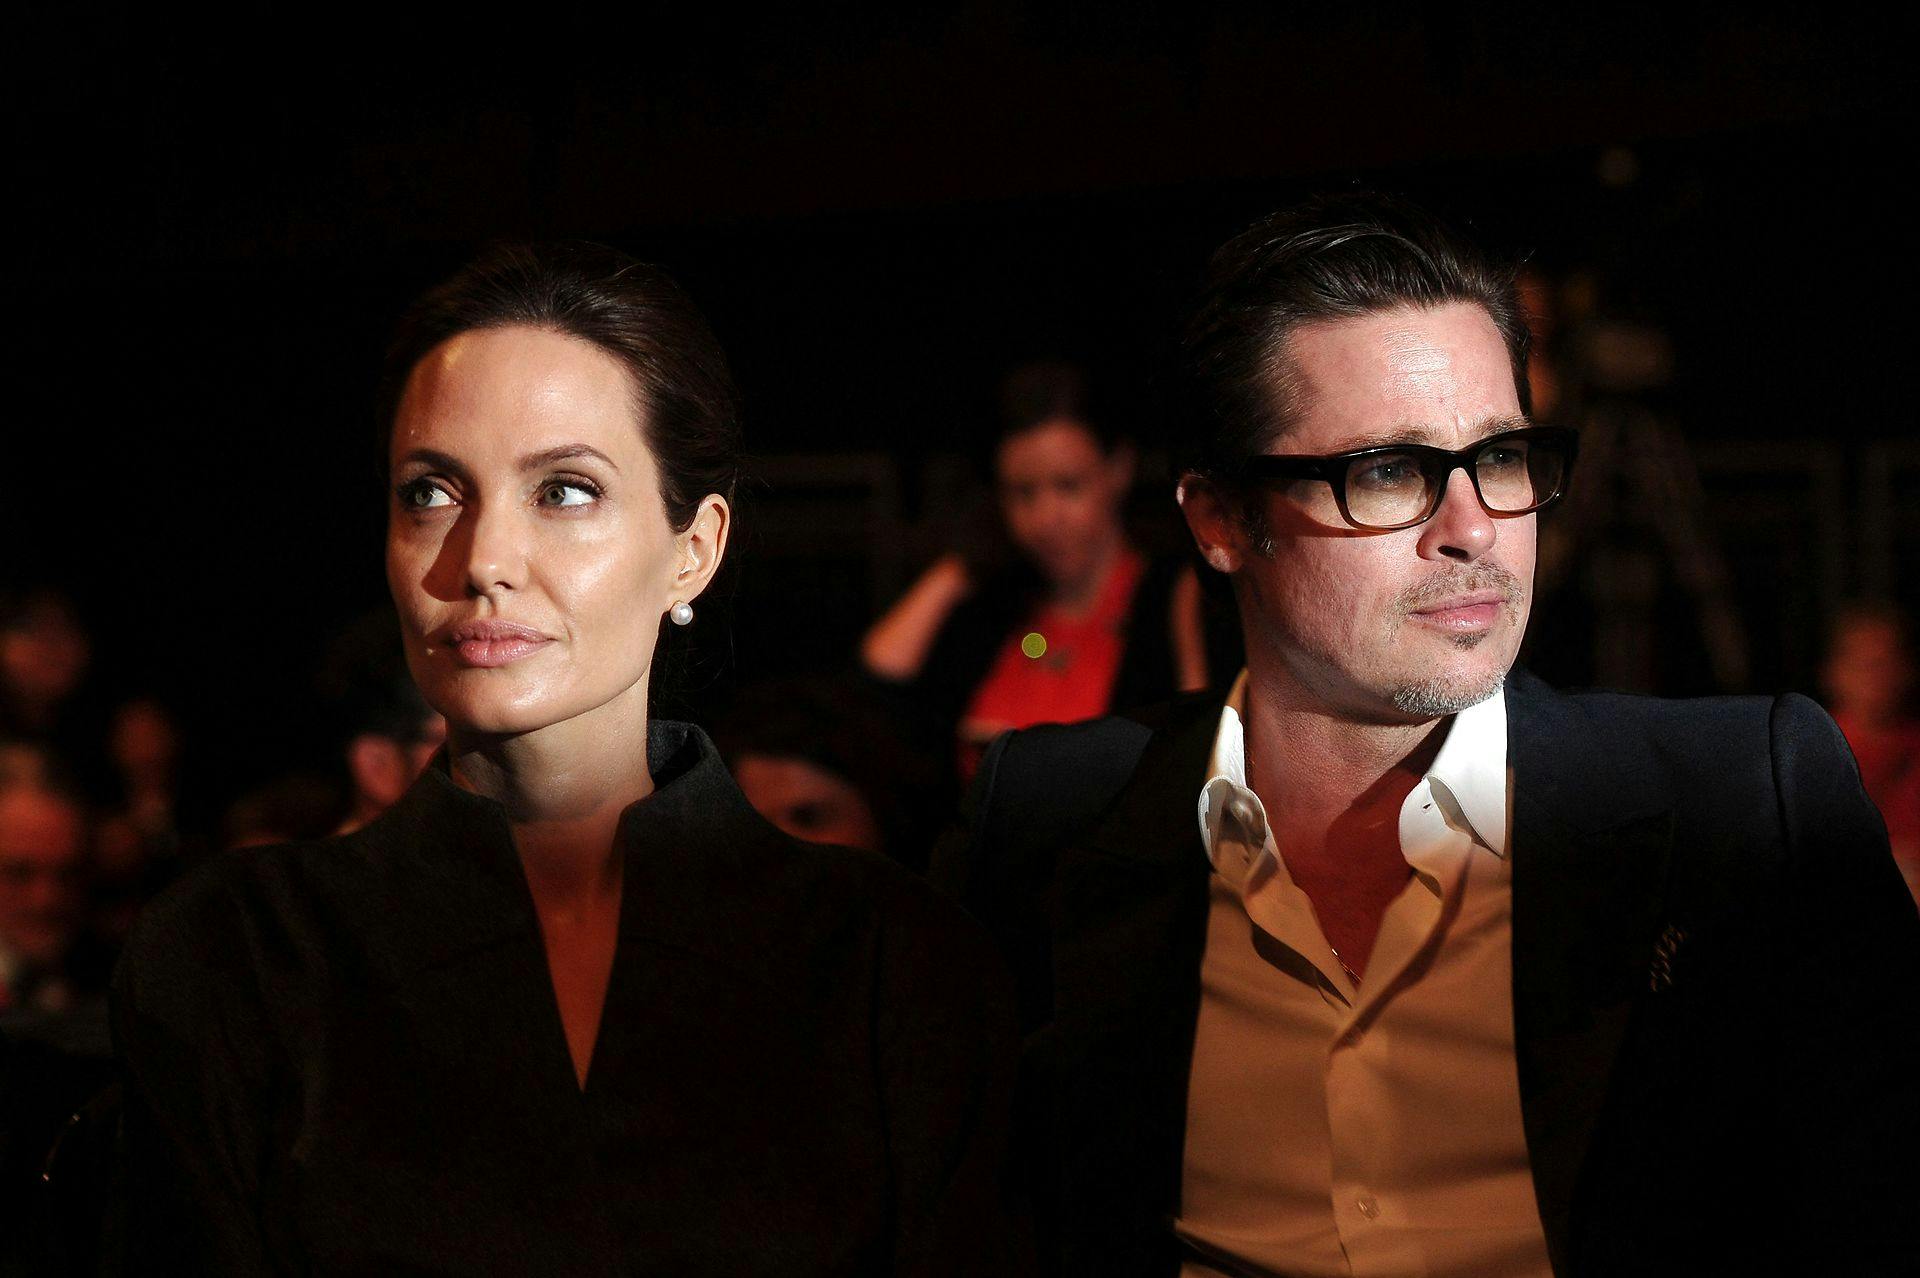 Der har i årevis været iskold luft mellem det tidligere ægtepar, Brad Pitt og Angelina Jolie.
